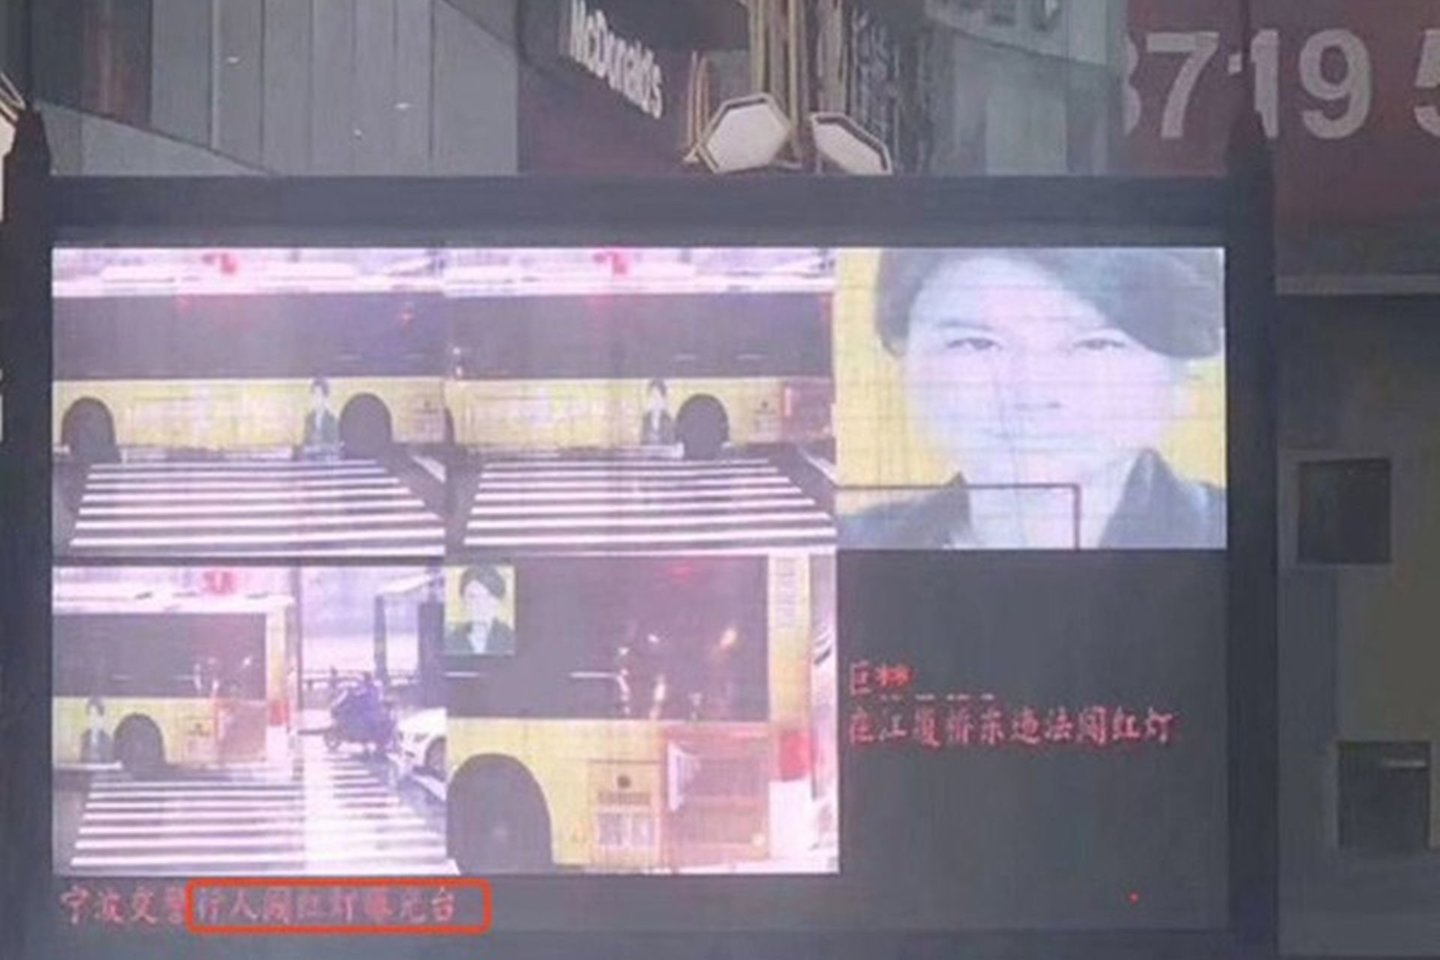 Dong Mingzhu veidas pateko ir į ekraną, kuriame rodomi pažeidėjų veidai su nepilnais vardais ir pavardėmis. <br> Ekrano nuotr.